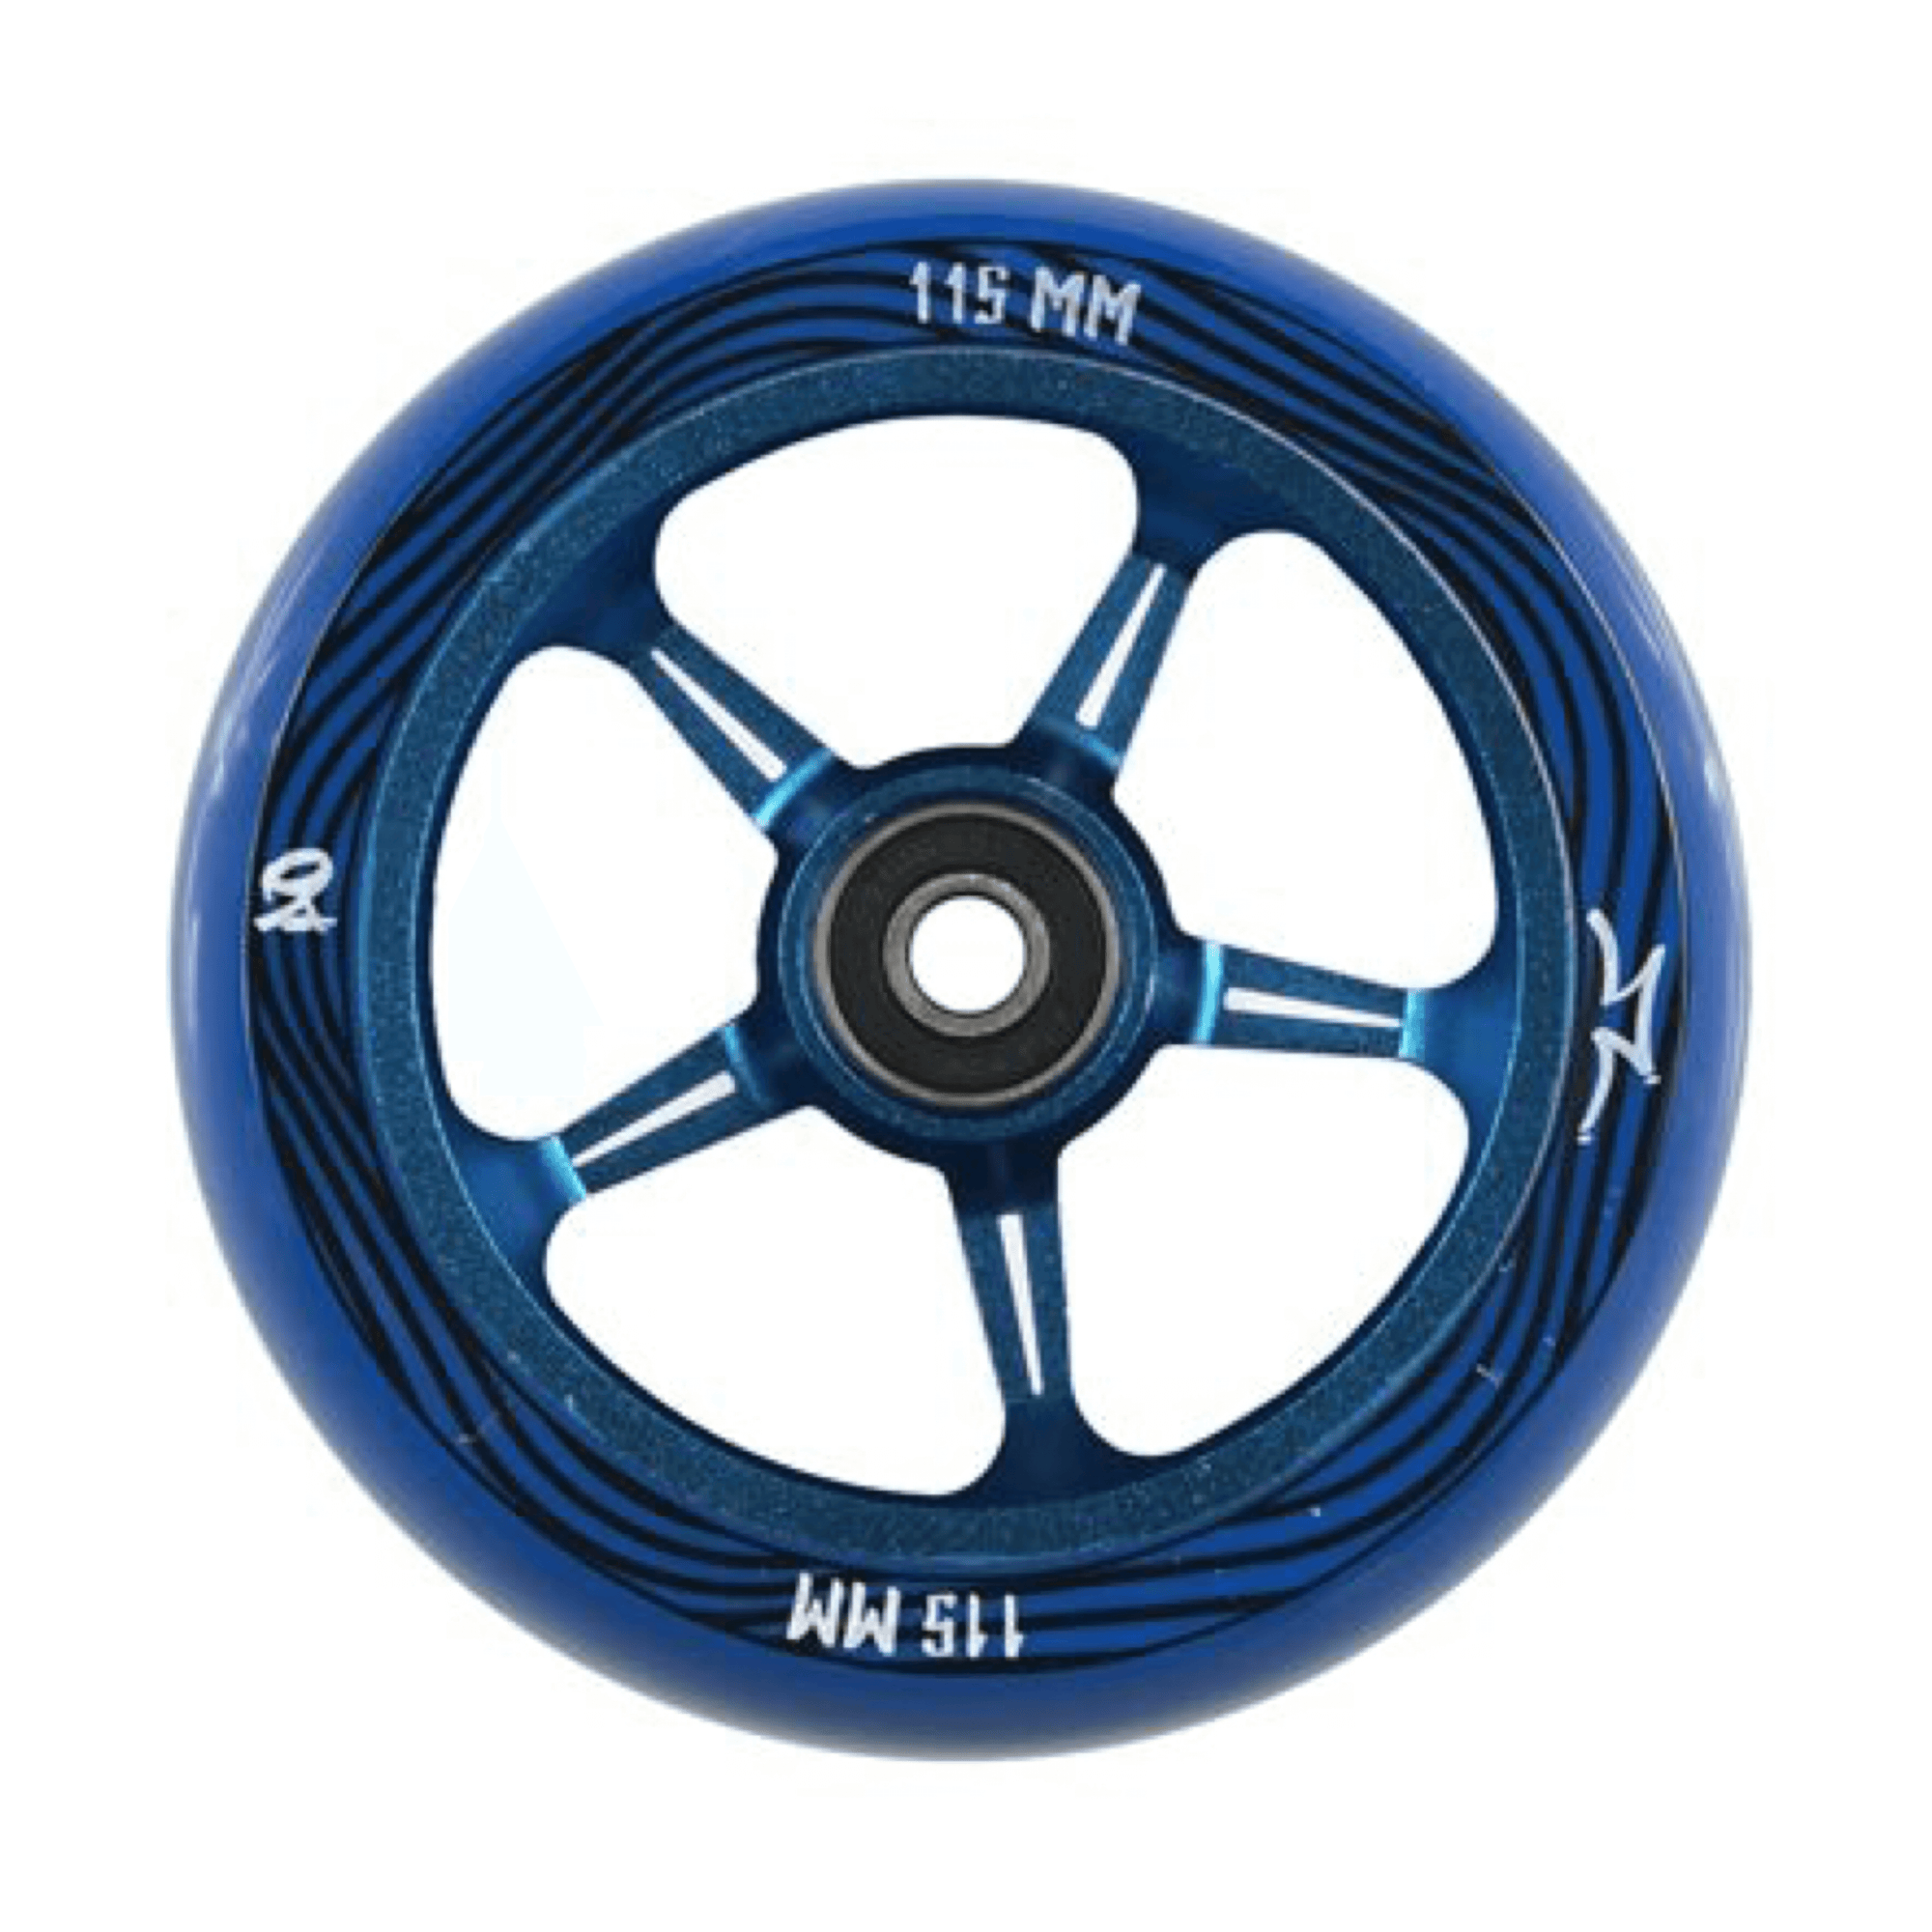 AO WHEELS Blue AO Pentacle 115/30mm Wide Wheels